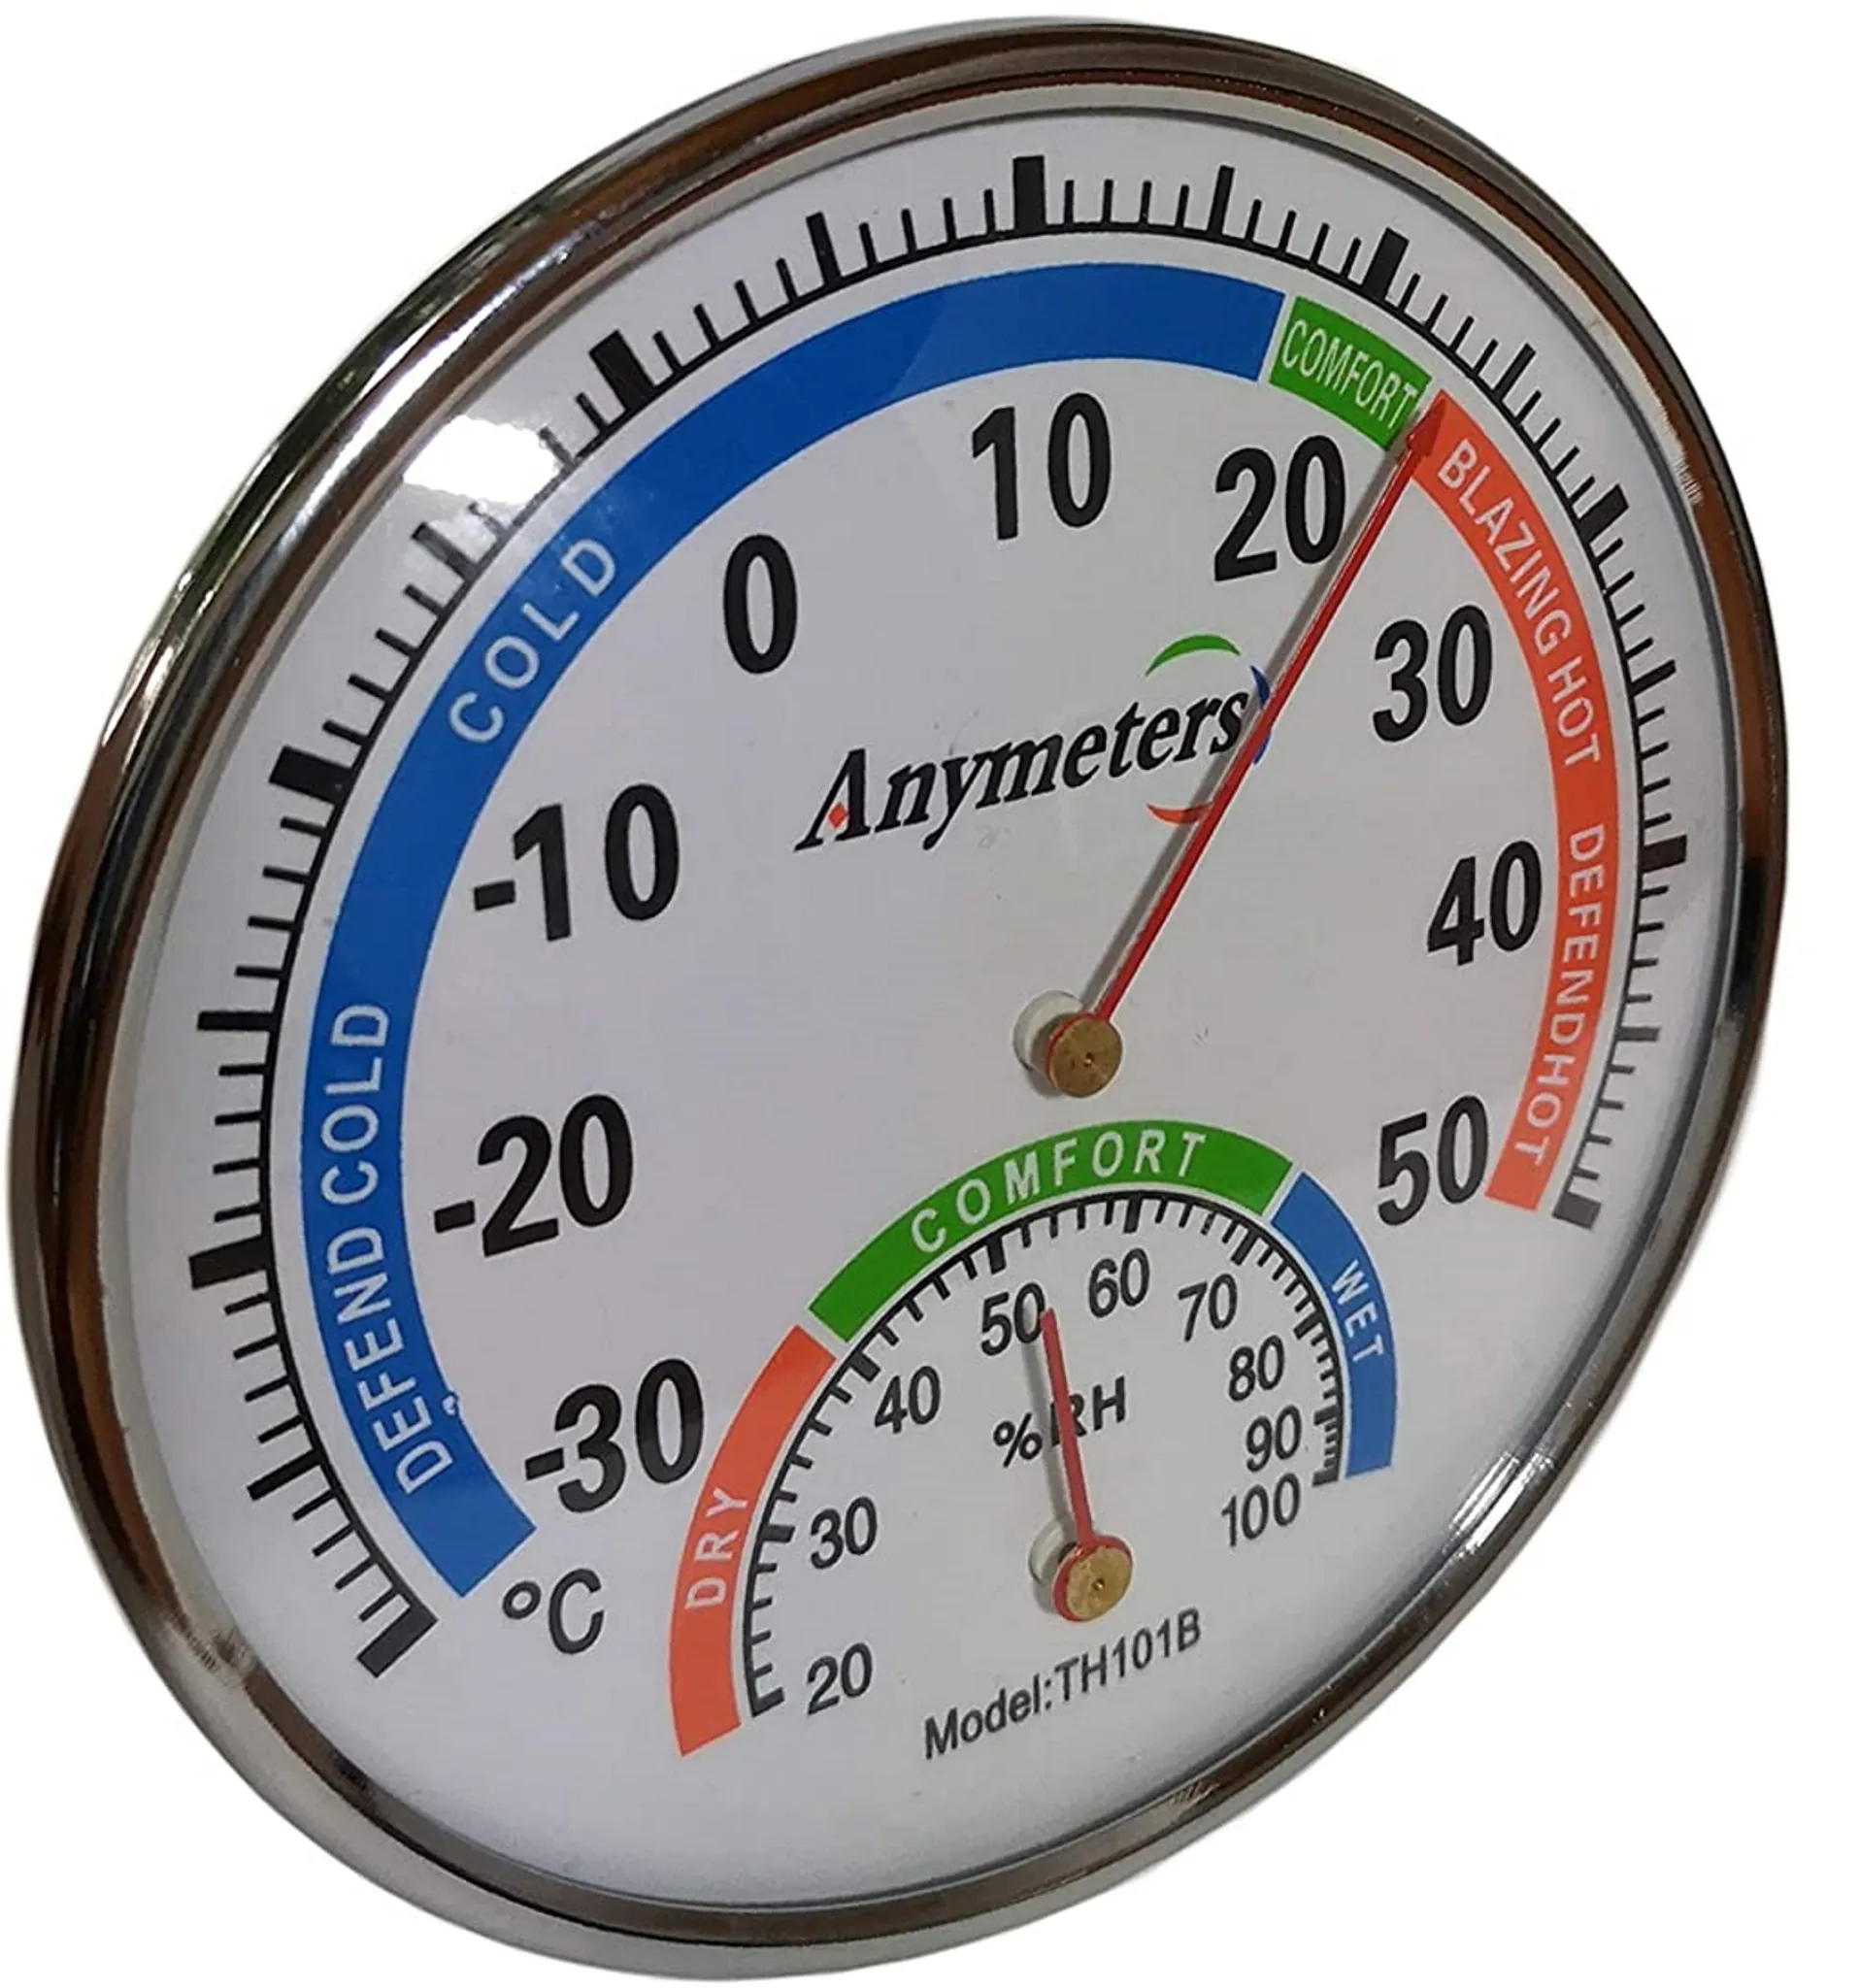 Hama Action. Produktfarbe: Weiß, Messfunktionen: Innen-Hygrometer, Innen-Thermometer,  Außen-Hygrometer, Außen-Thermometer, Feuchtigkeitmessbereich aussen H-H: 20  00186412